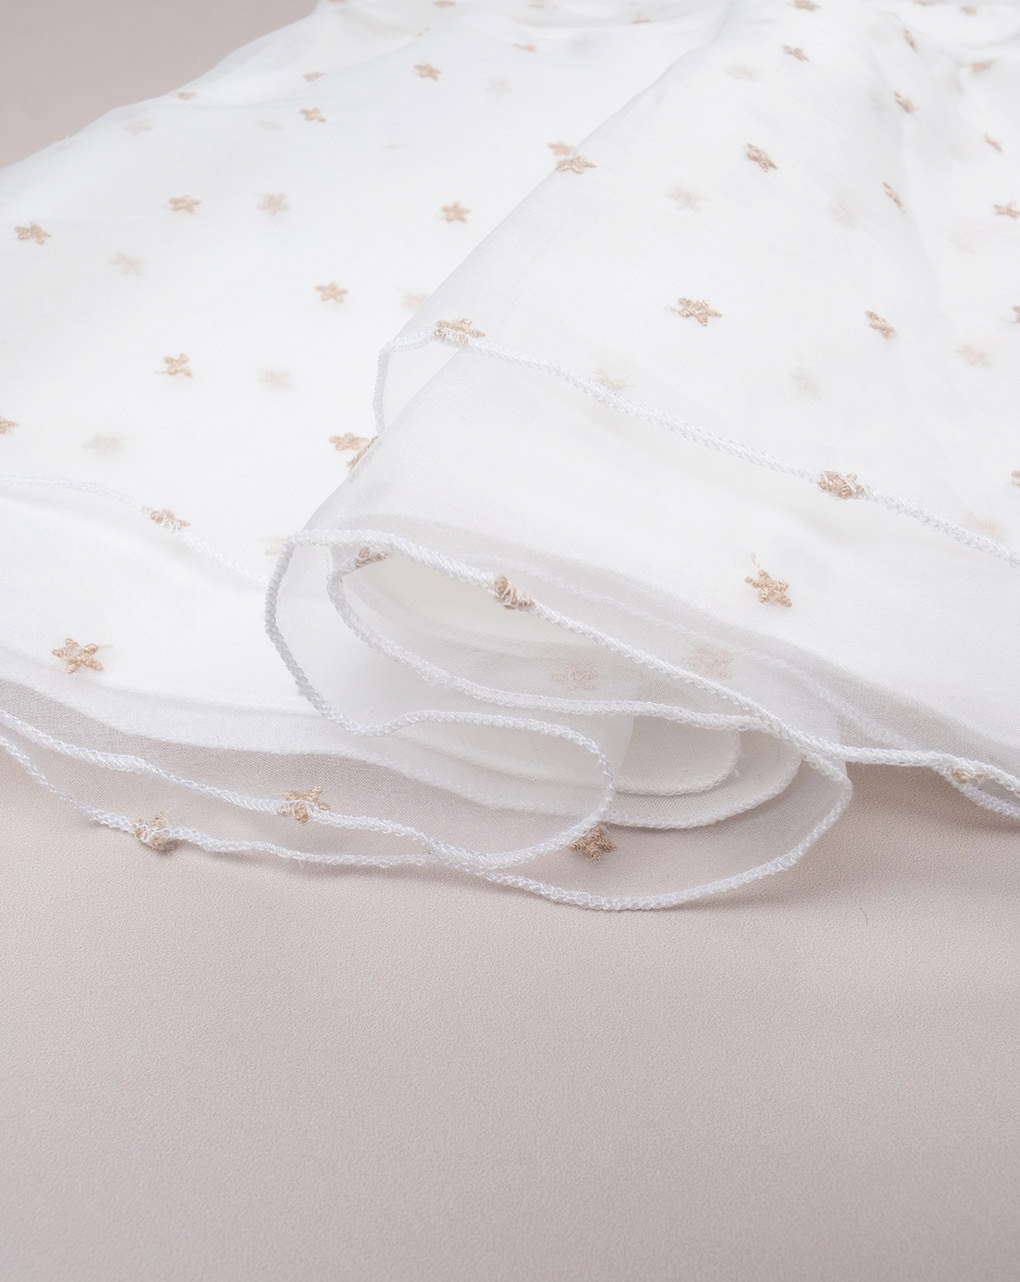 βρεφικό φόρεμα λευκό με αστεράκια για κορίτσι - Prénatal